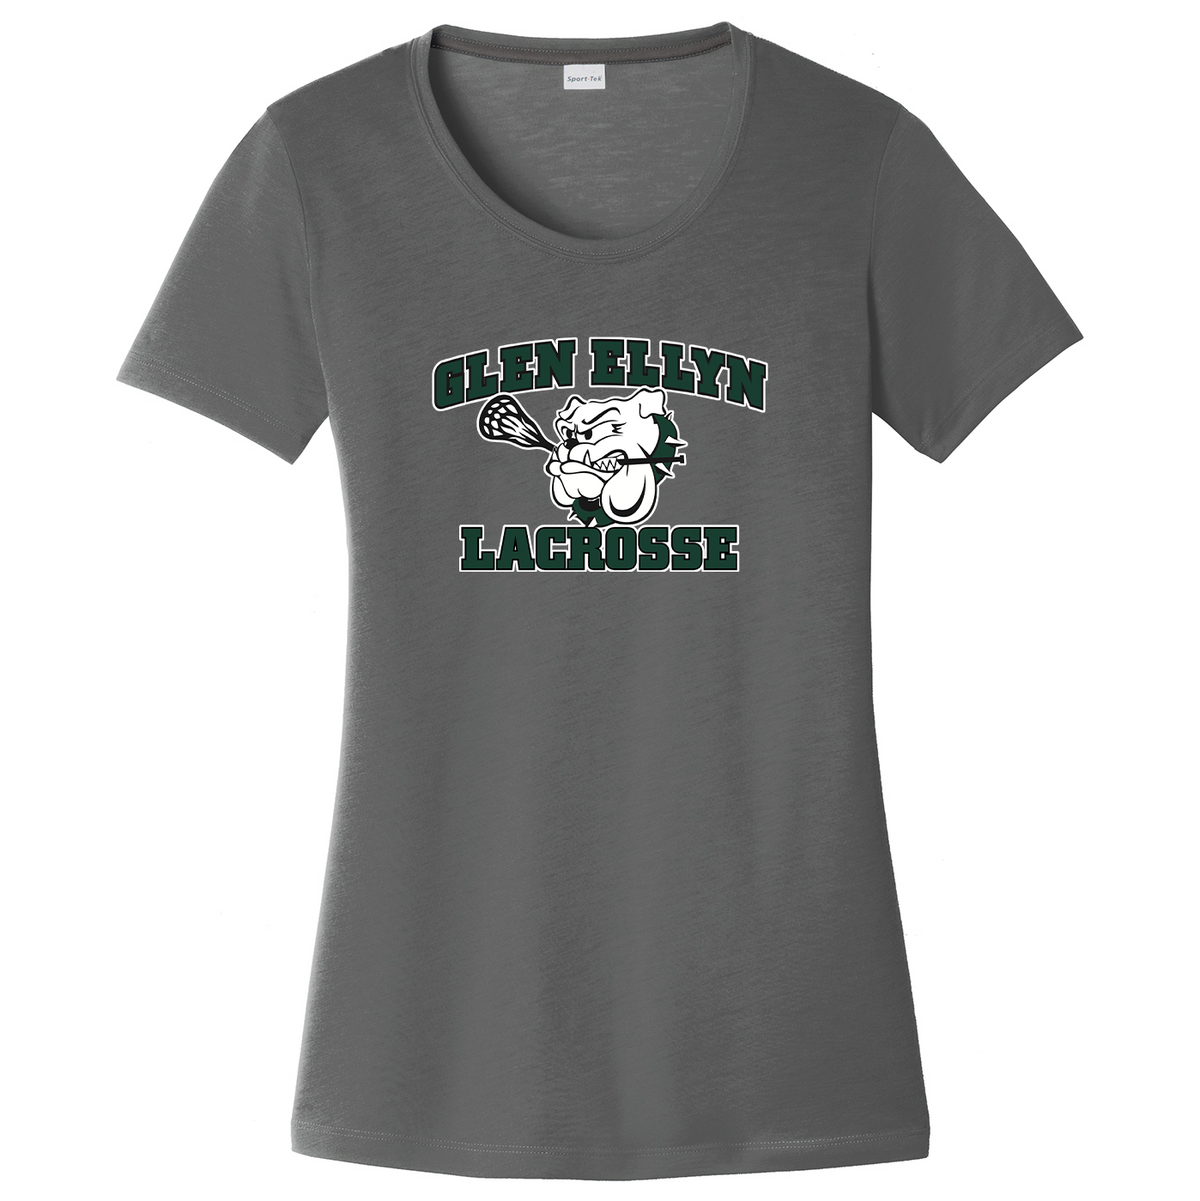 Glen Ellyn Bulldogs Lacrosse Women's CottonTouch Performance T-Shirt